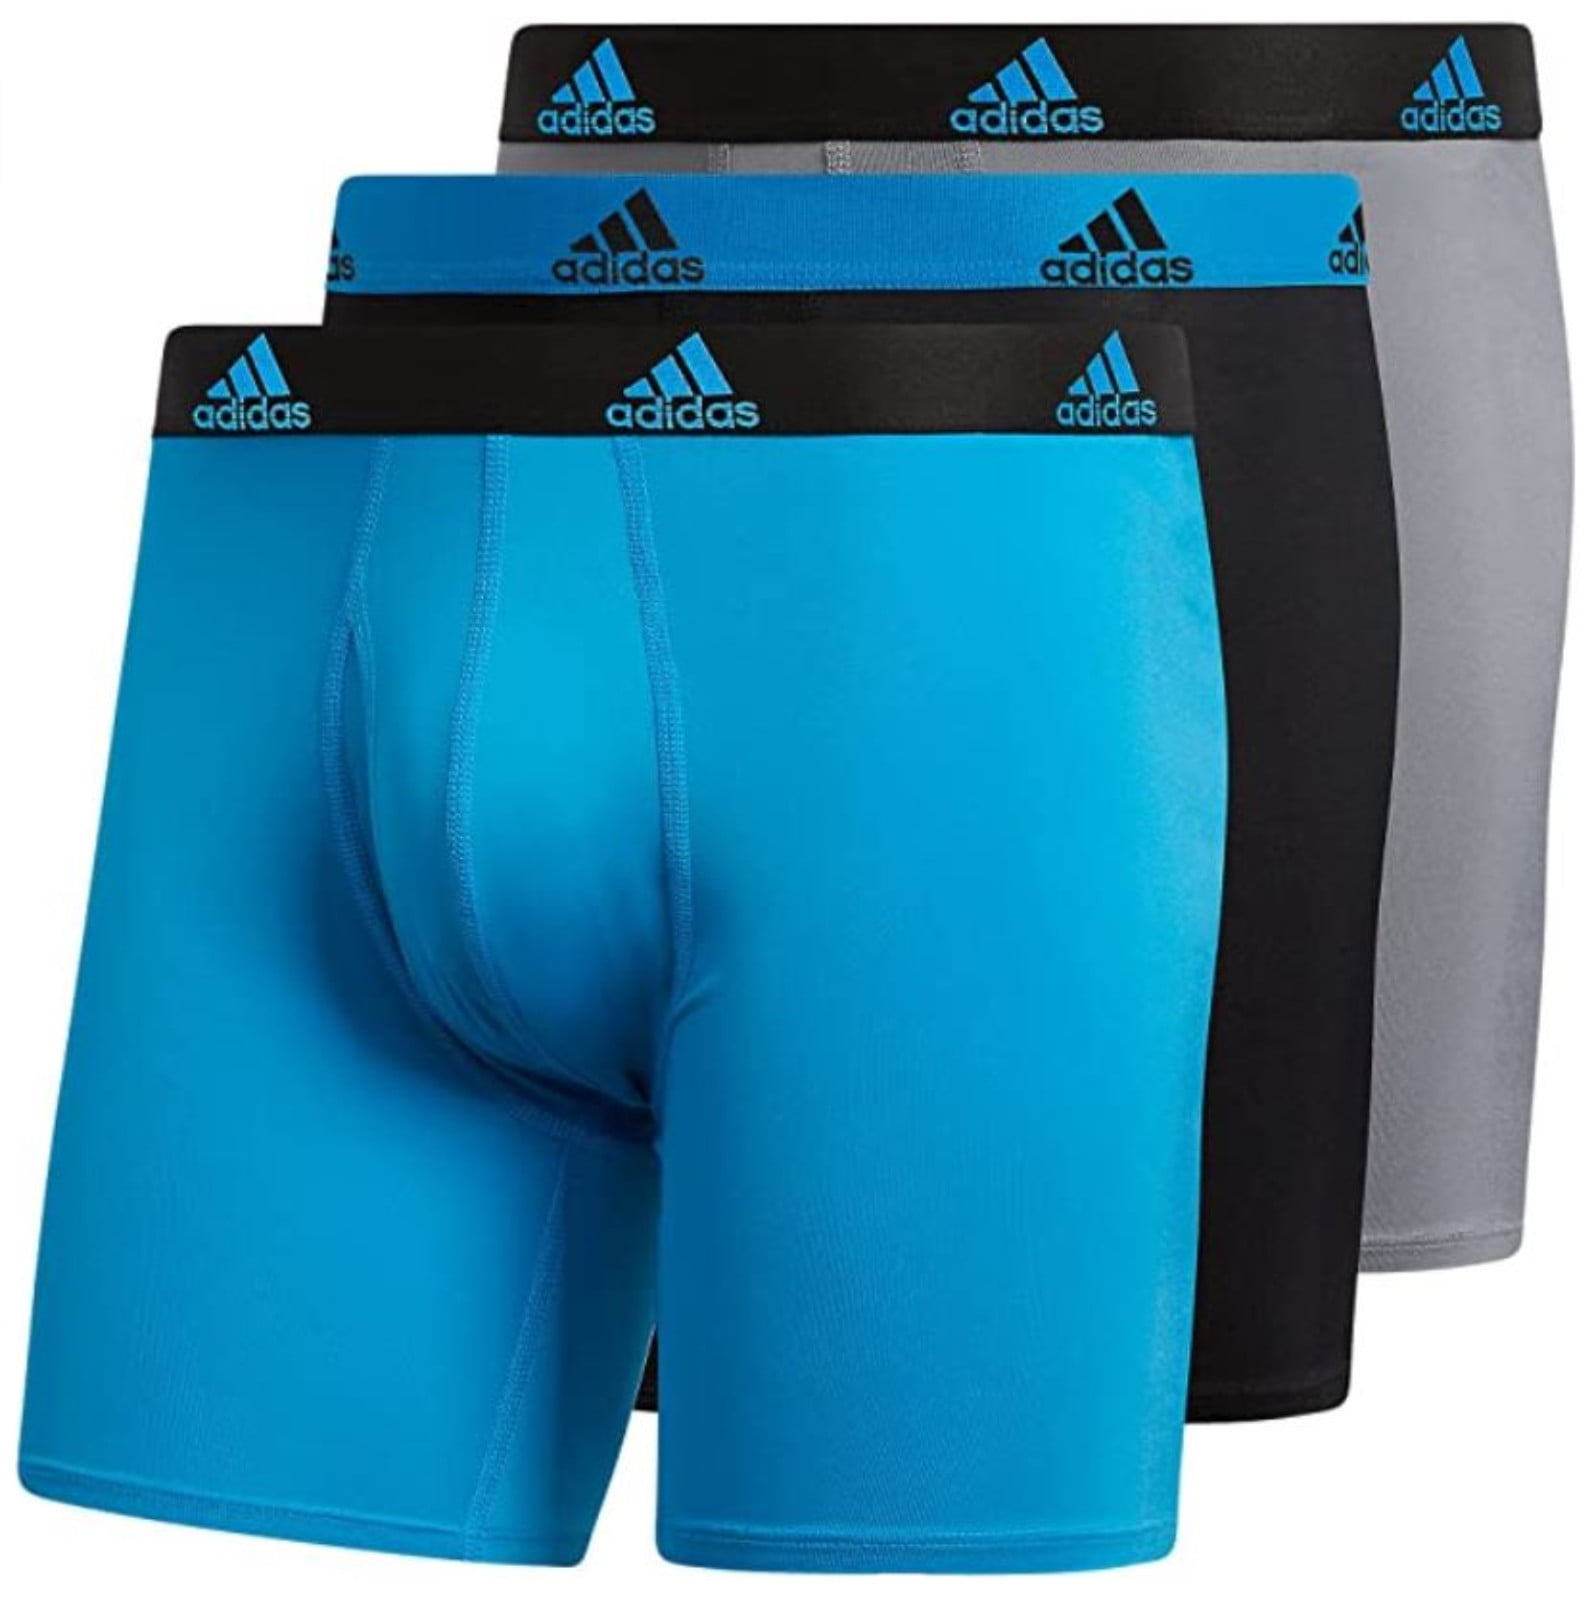 Adidas Men's Performance Boxer Brief Underwear (3-Pack) - Blue/Black/Grey  (S)